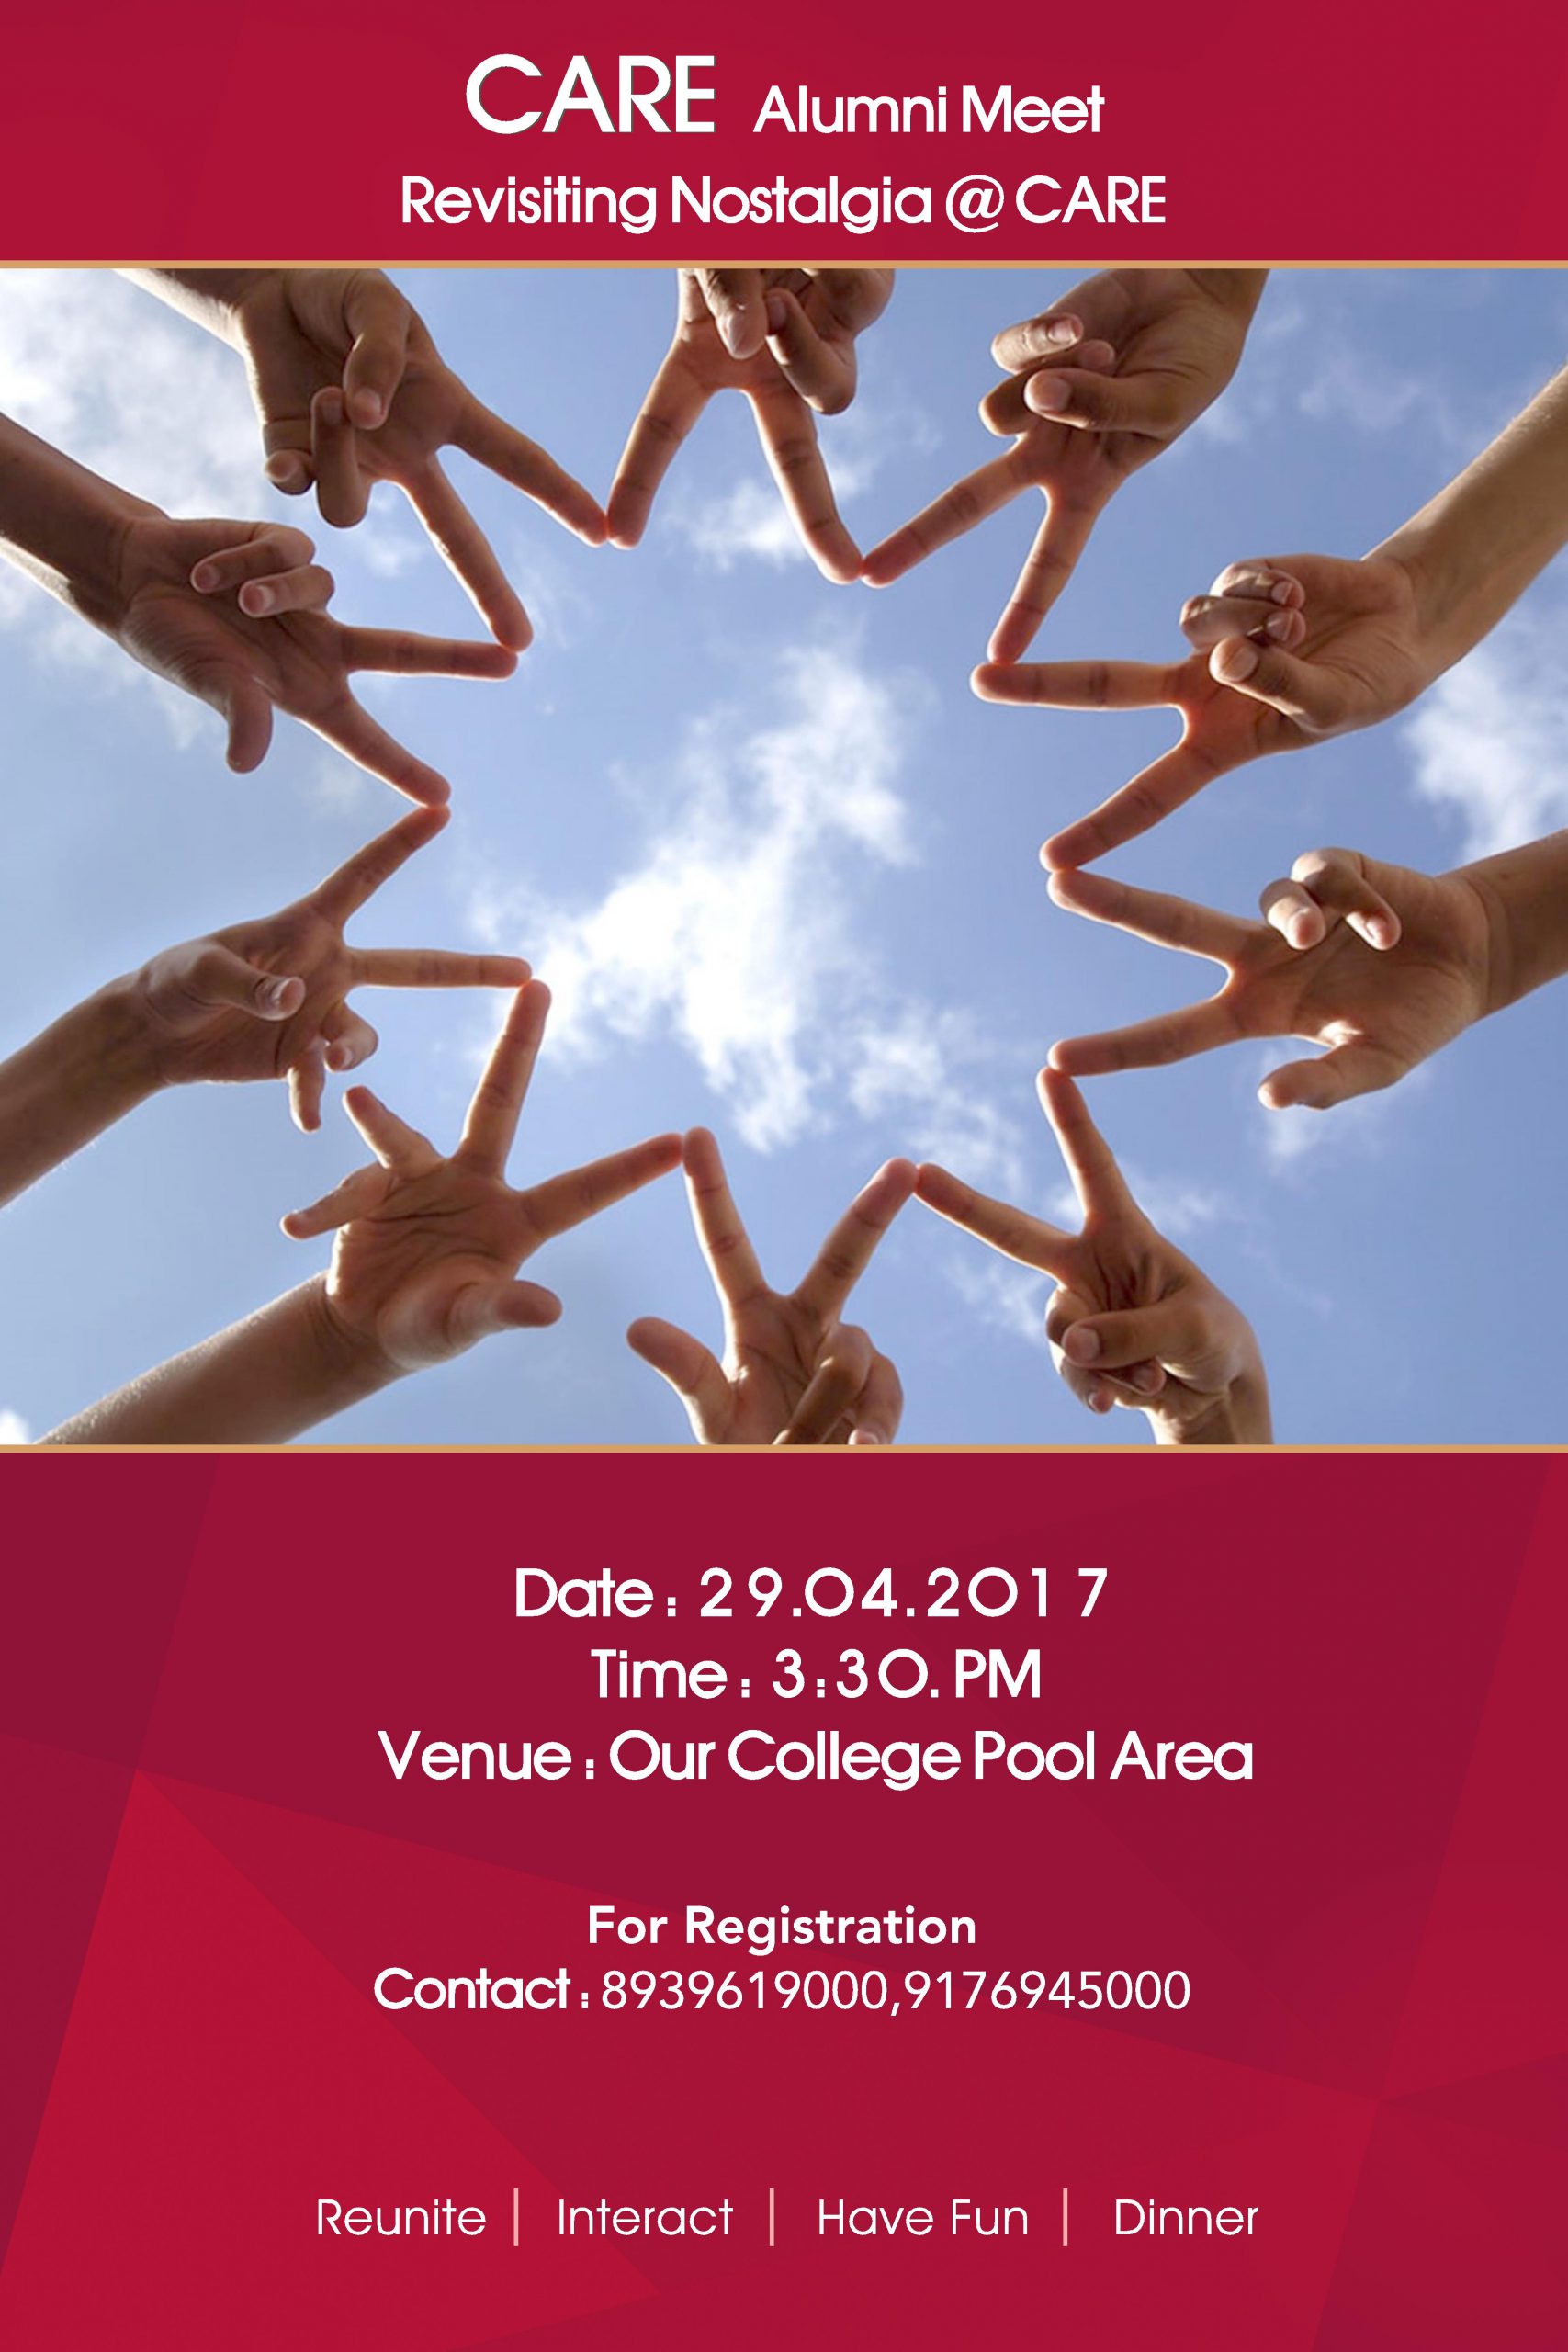 CARE Alumni Meet on 29 April 2017